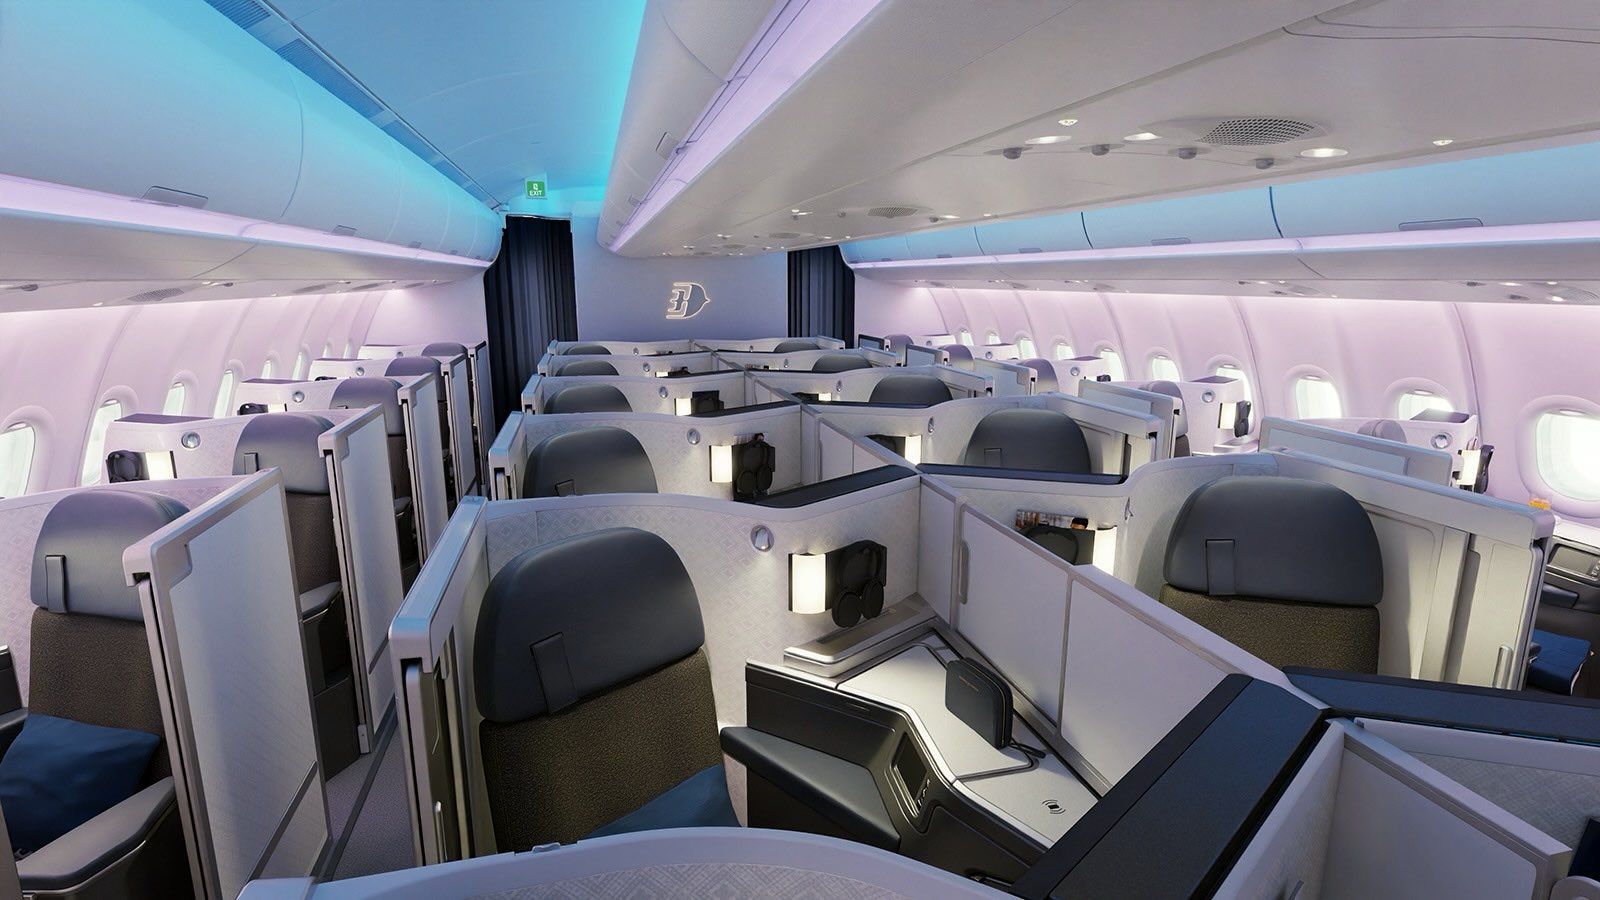 马来西亚航空推出全新空客 A330neo 座椅并宣布墨尔本为第一目的地